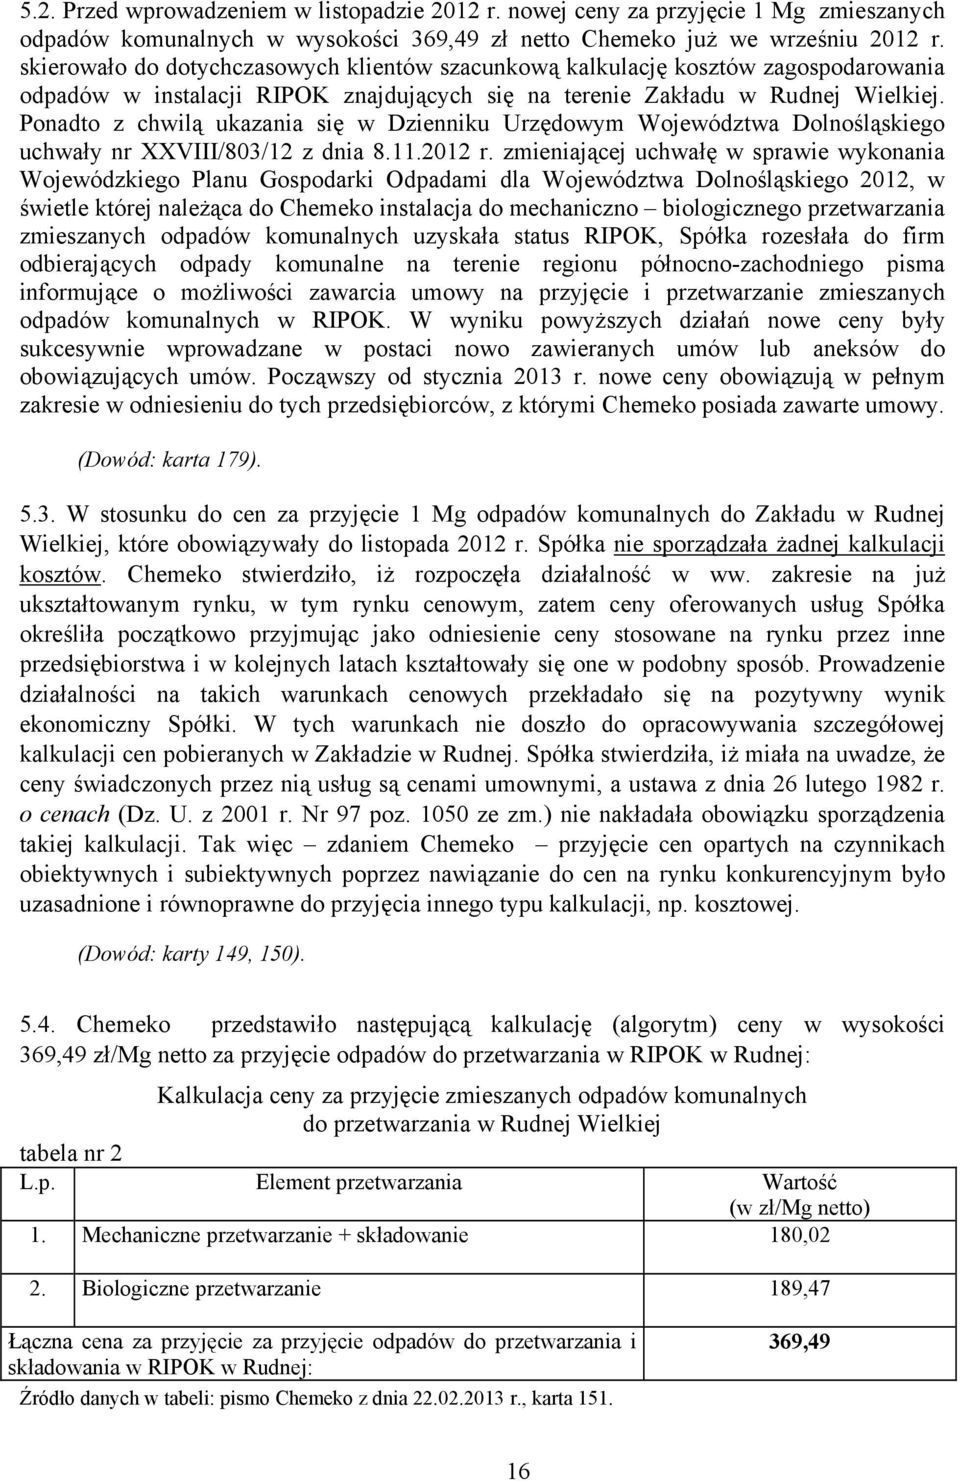 Ponadto z chwilą ukazania się w Dzienniku Urzędowym Województwa Dolnośląskiego uchwały nr XXVIII/803/12 z dnia 8.11.2012 r.